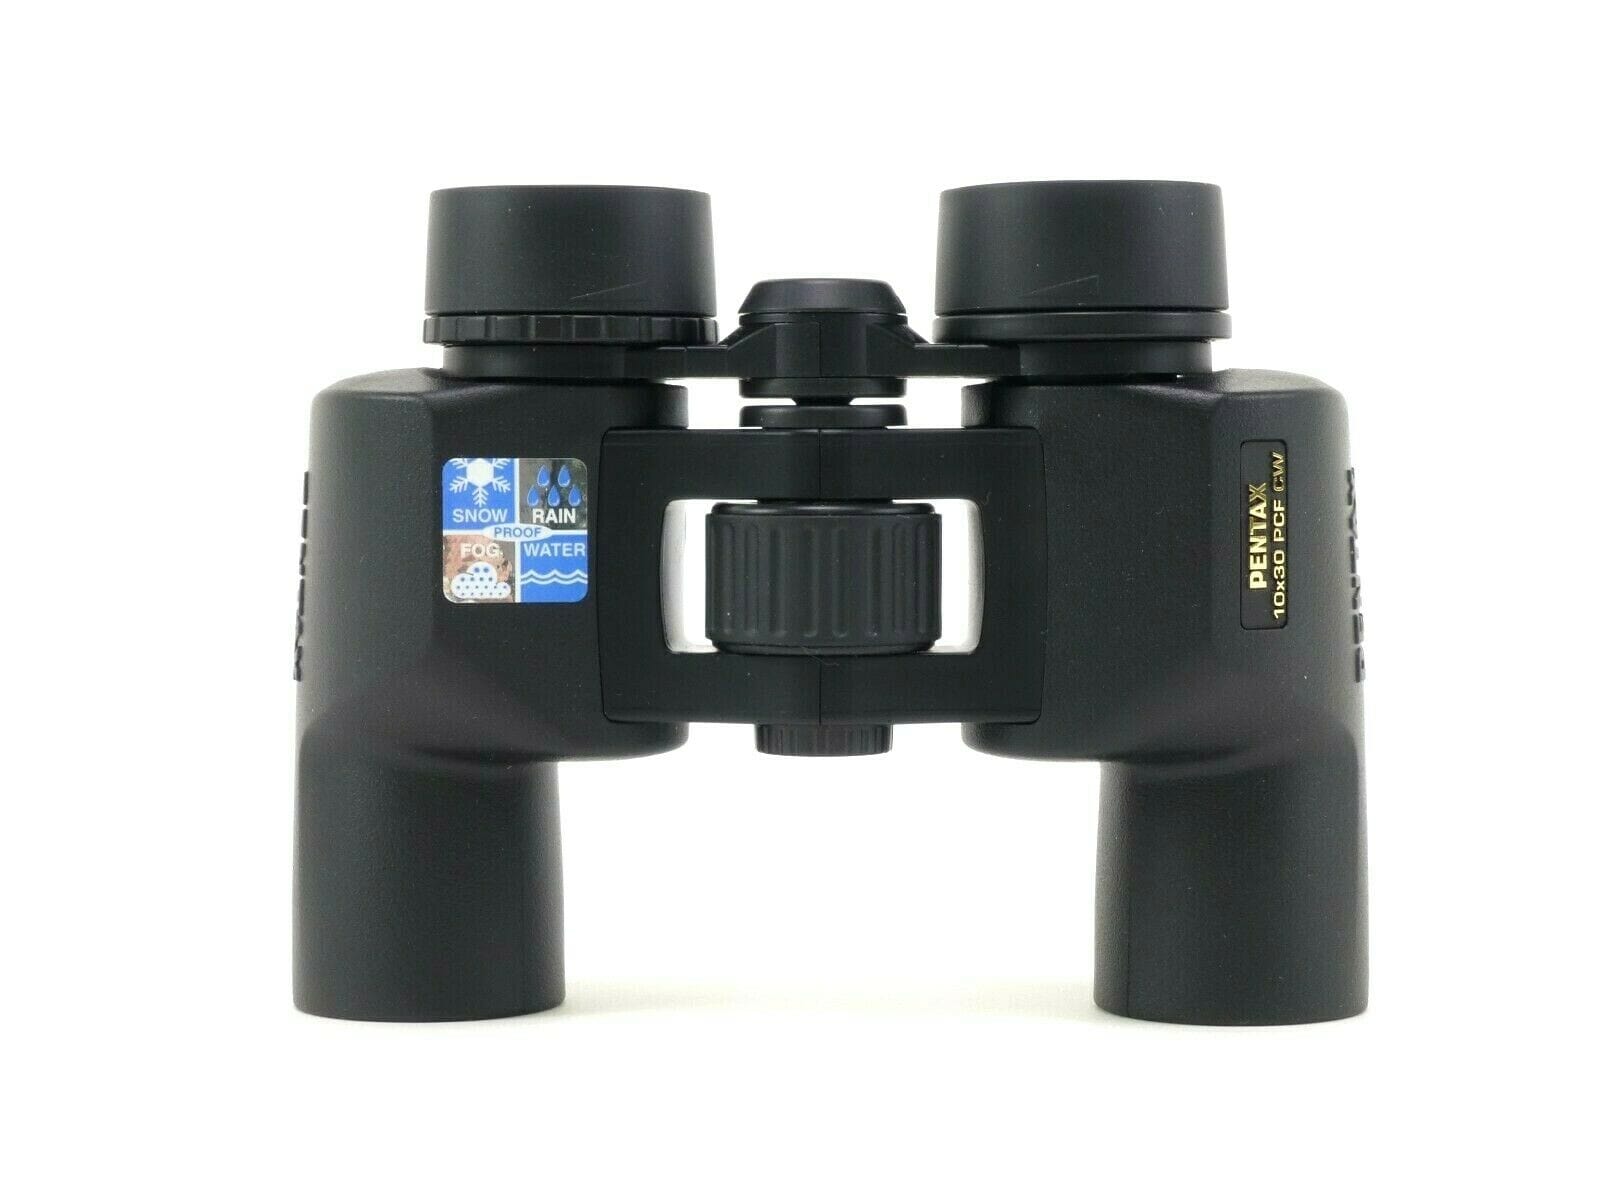 Pentax 10x30 PCF CW Binoculars - Demo – Camera Exchange